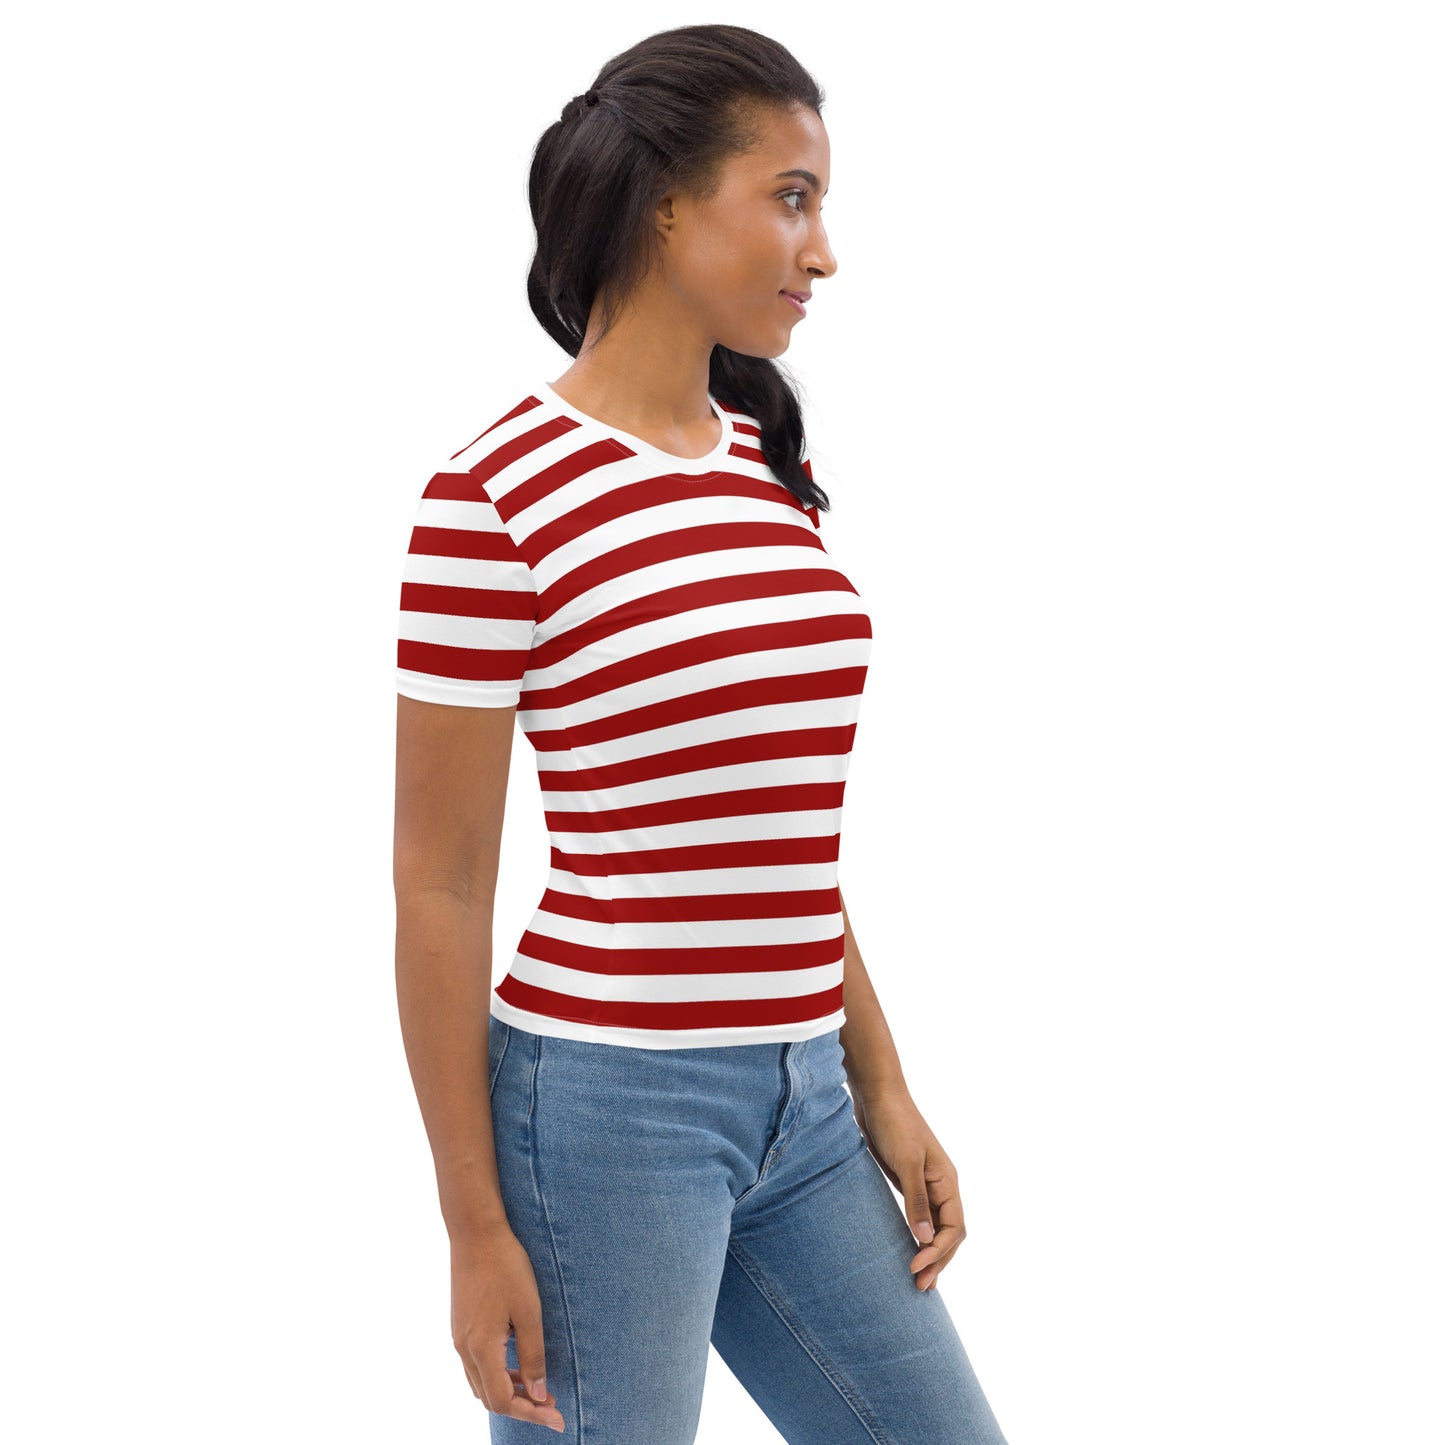 Camiseta listrada vermelha e branca para mulheres